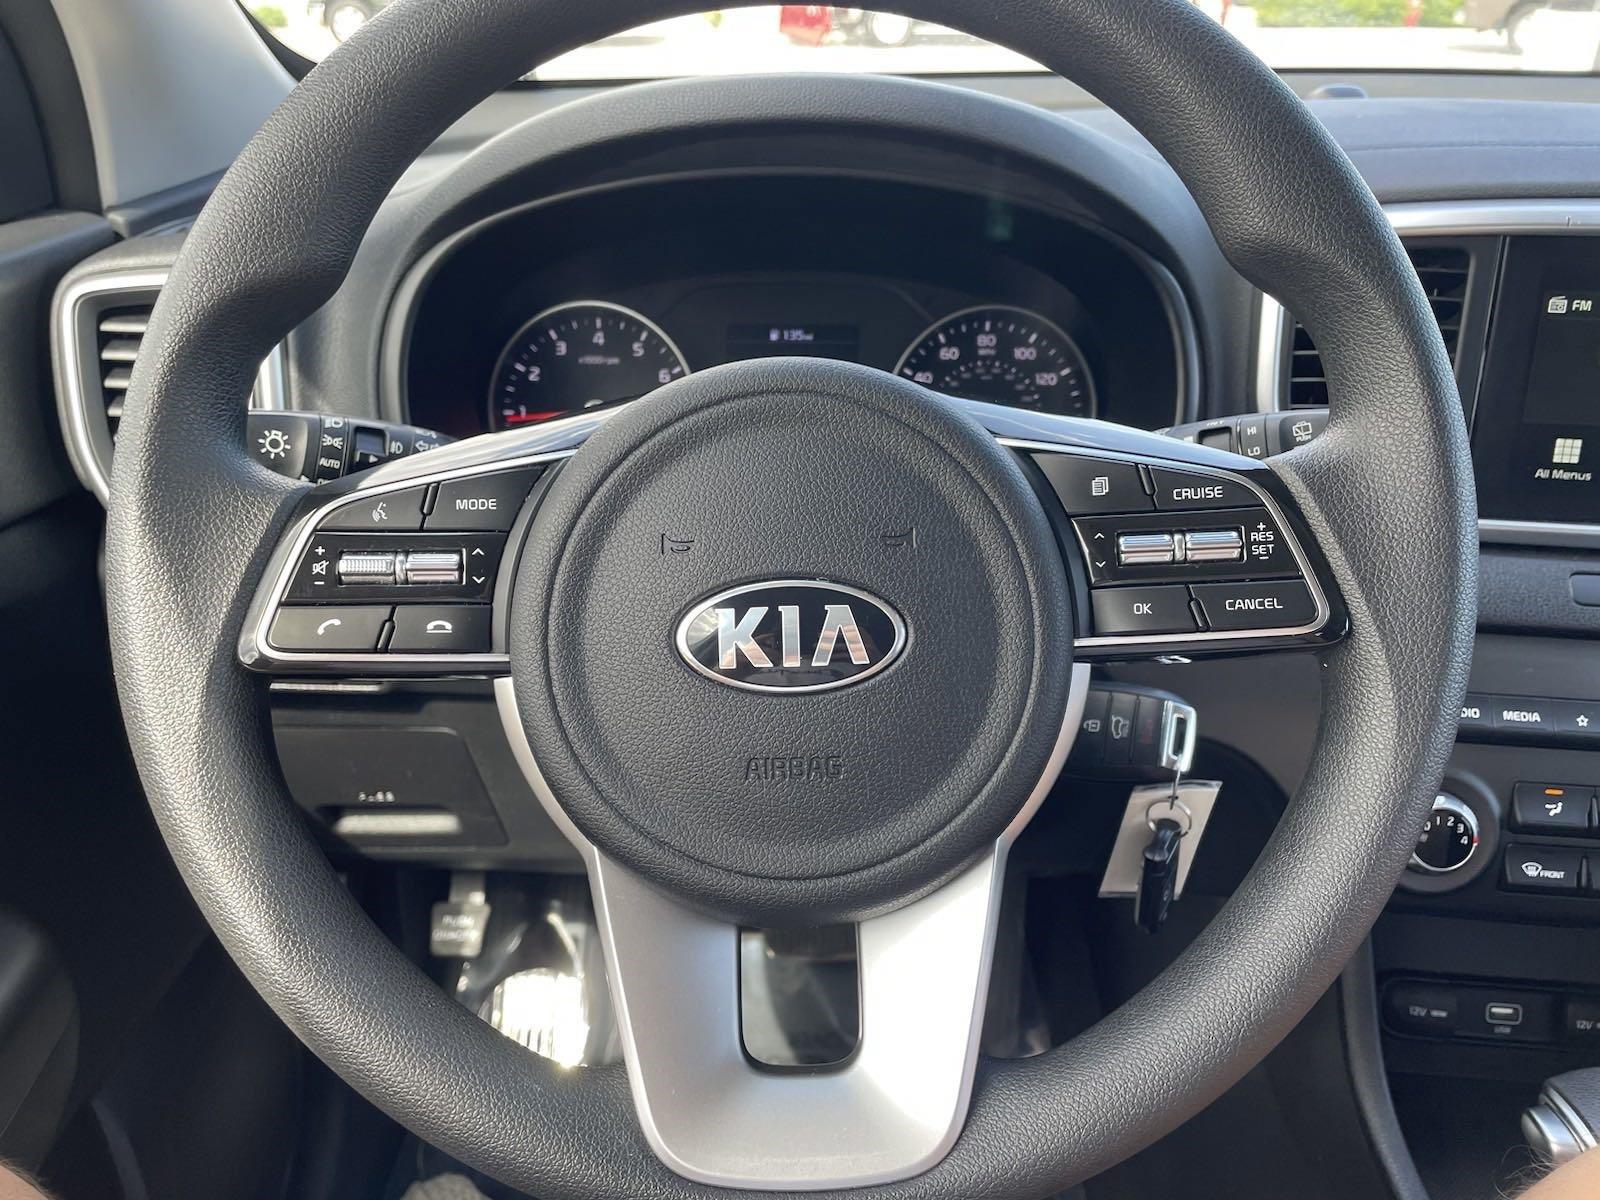 Used 2020 Kia Sportage LX SUV for sale in Lincoln NE